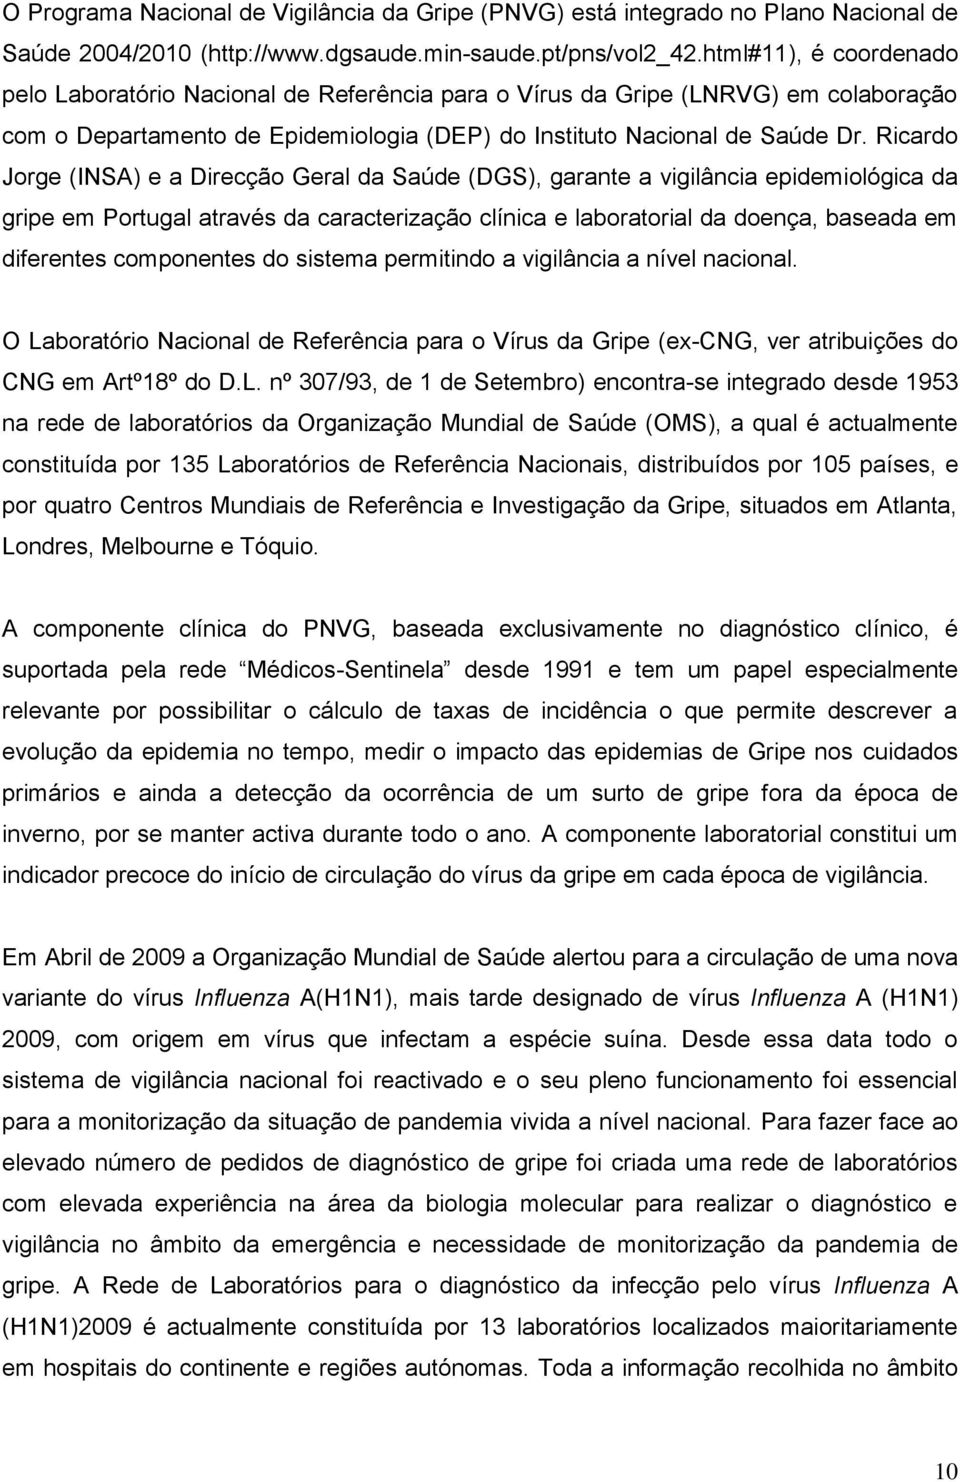 Ricardo Jorge (INSA) e a Direcção Geral da Saúde (DGS), garante a vigilância epidemiológica da gripe em Portugal através da caracterização clínica e laboratorial da doença, baseada em diferentes